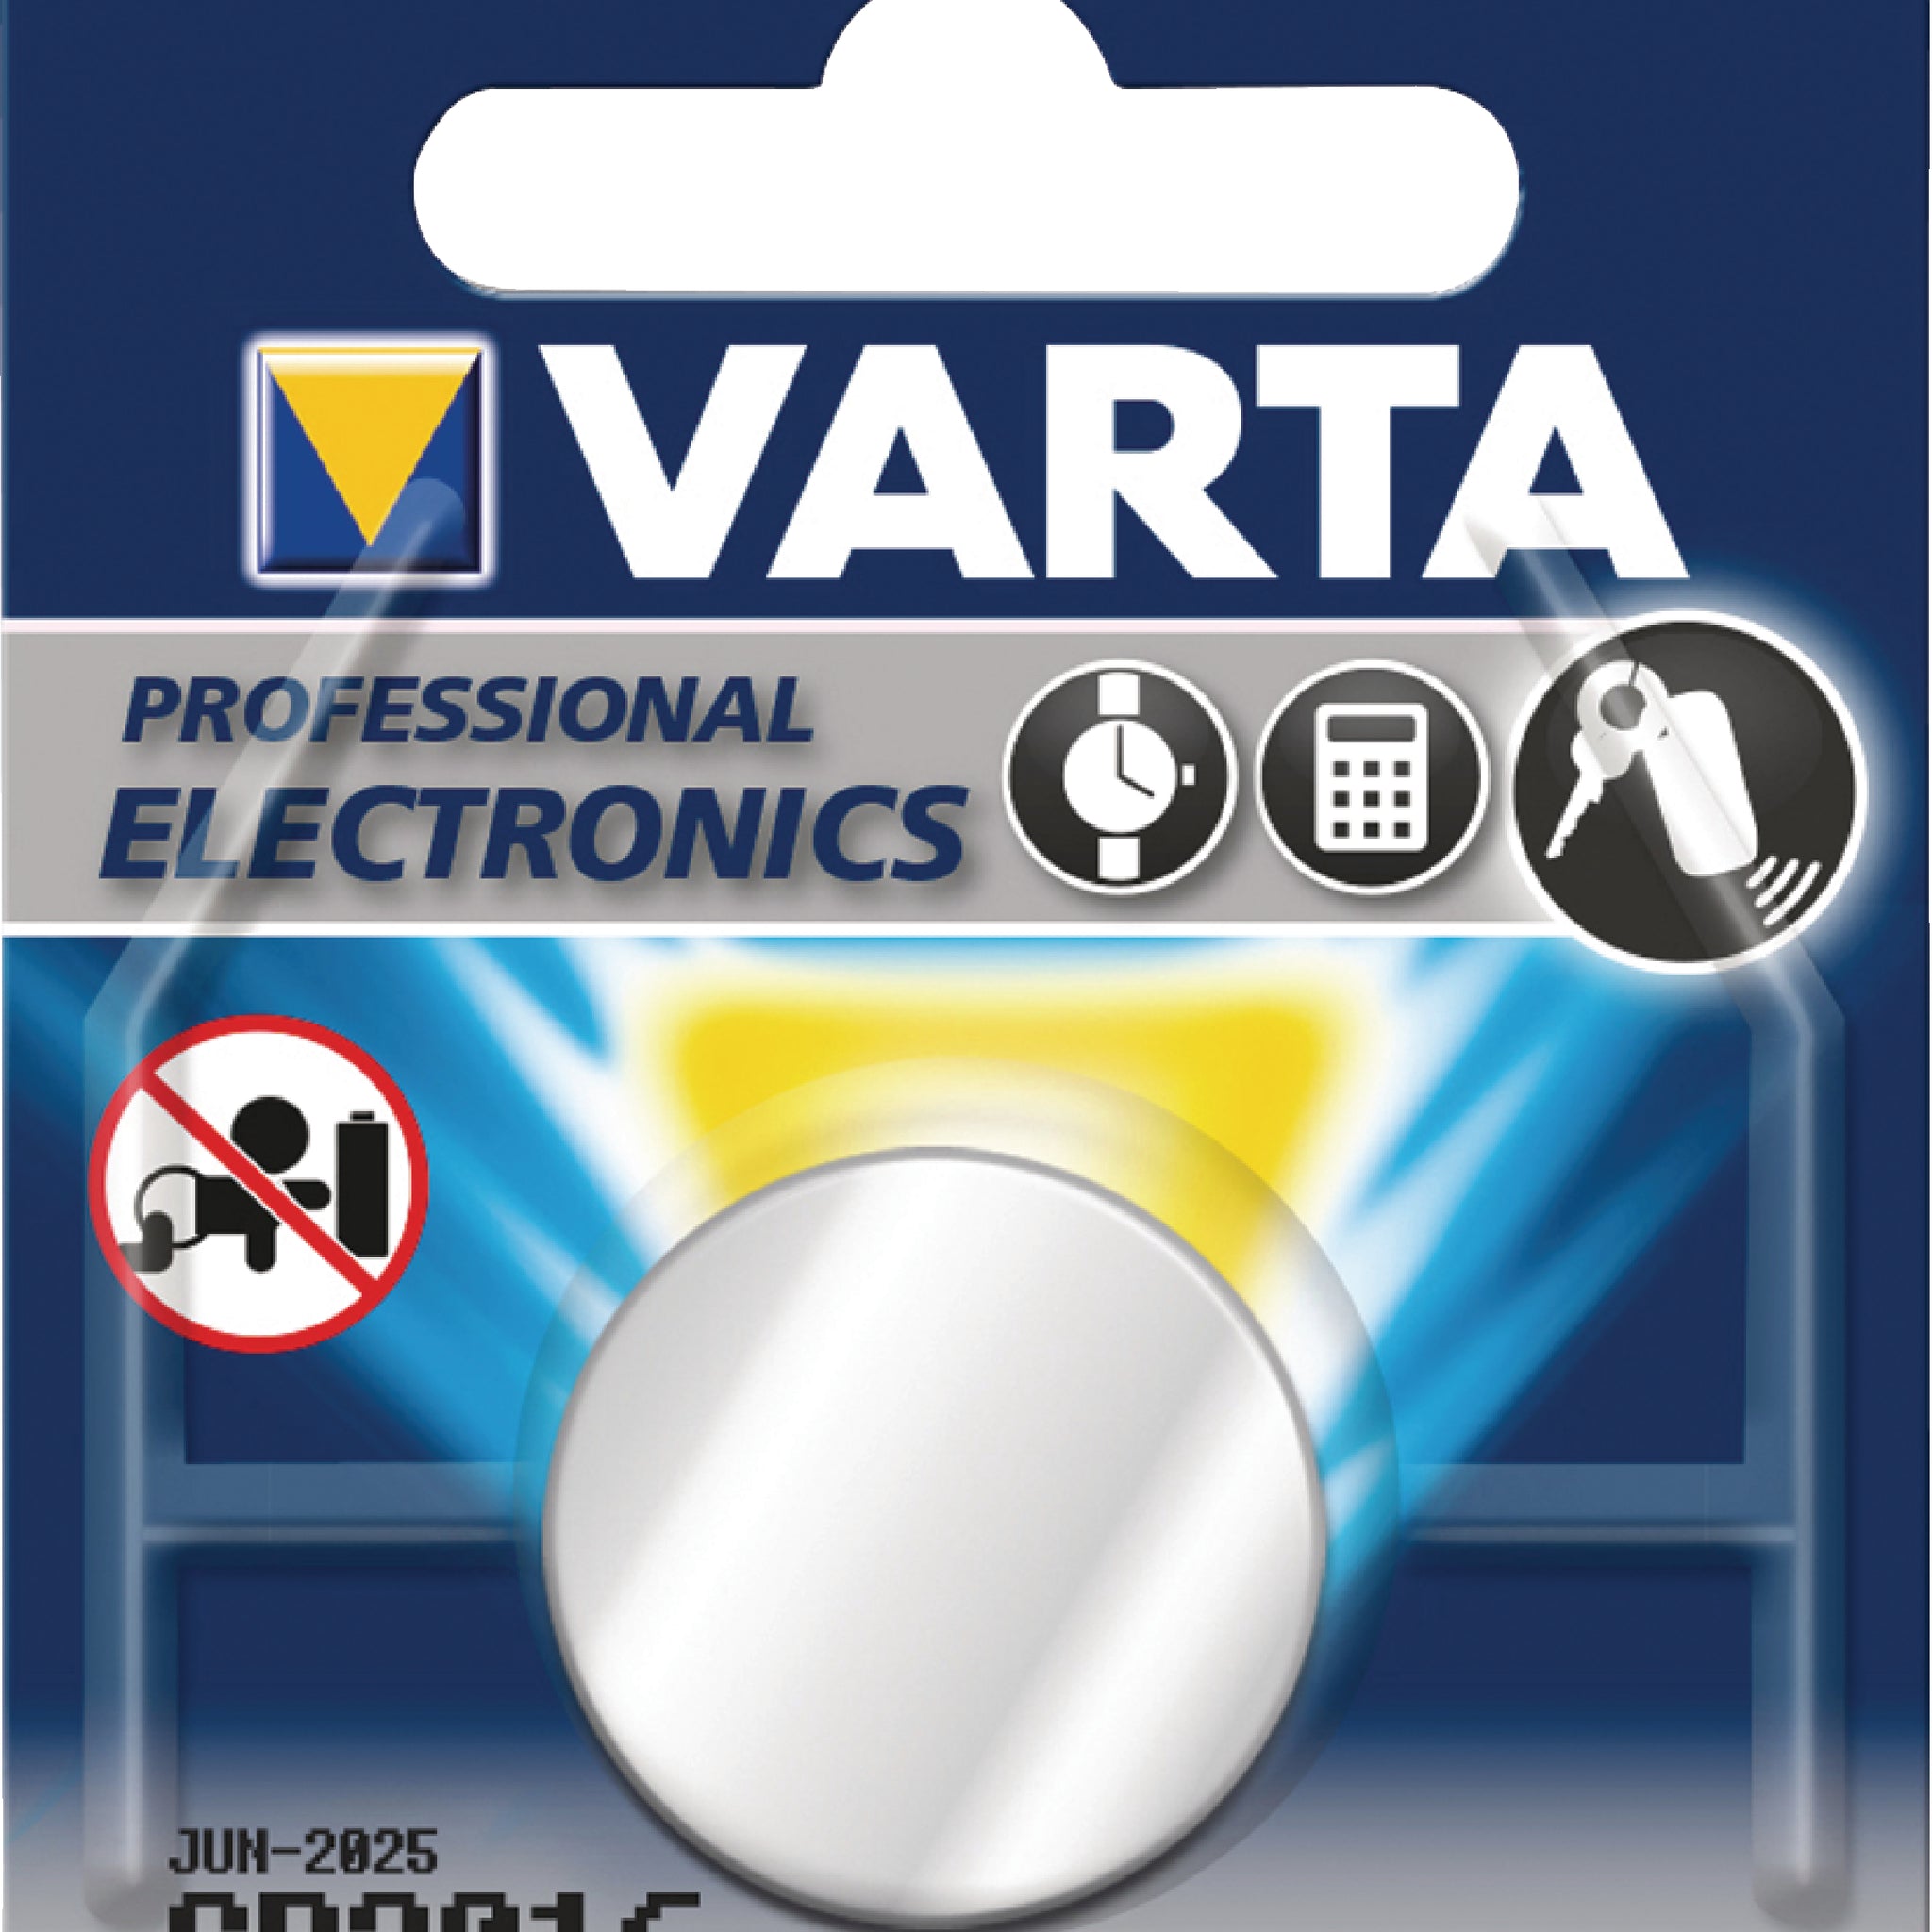 Varta CR2016 Battery